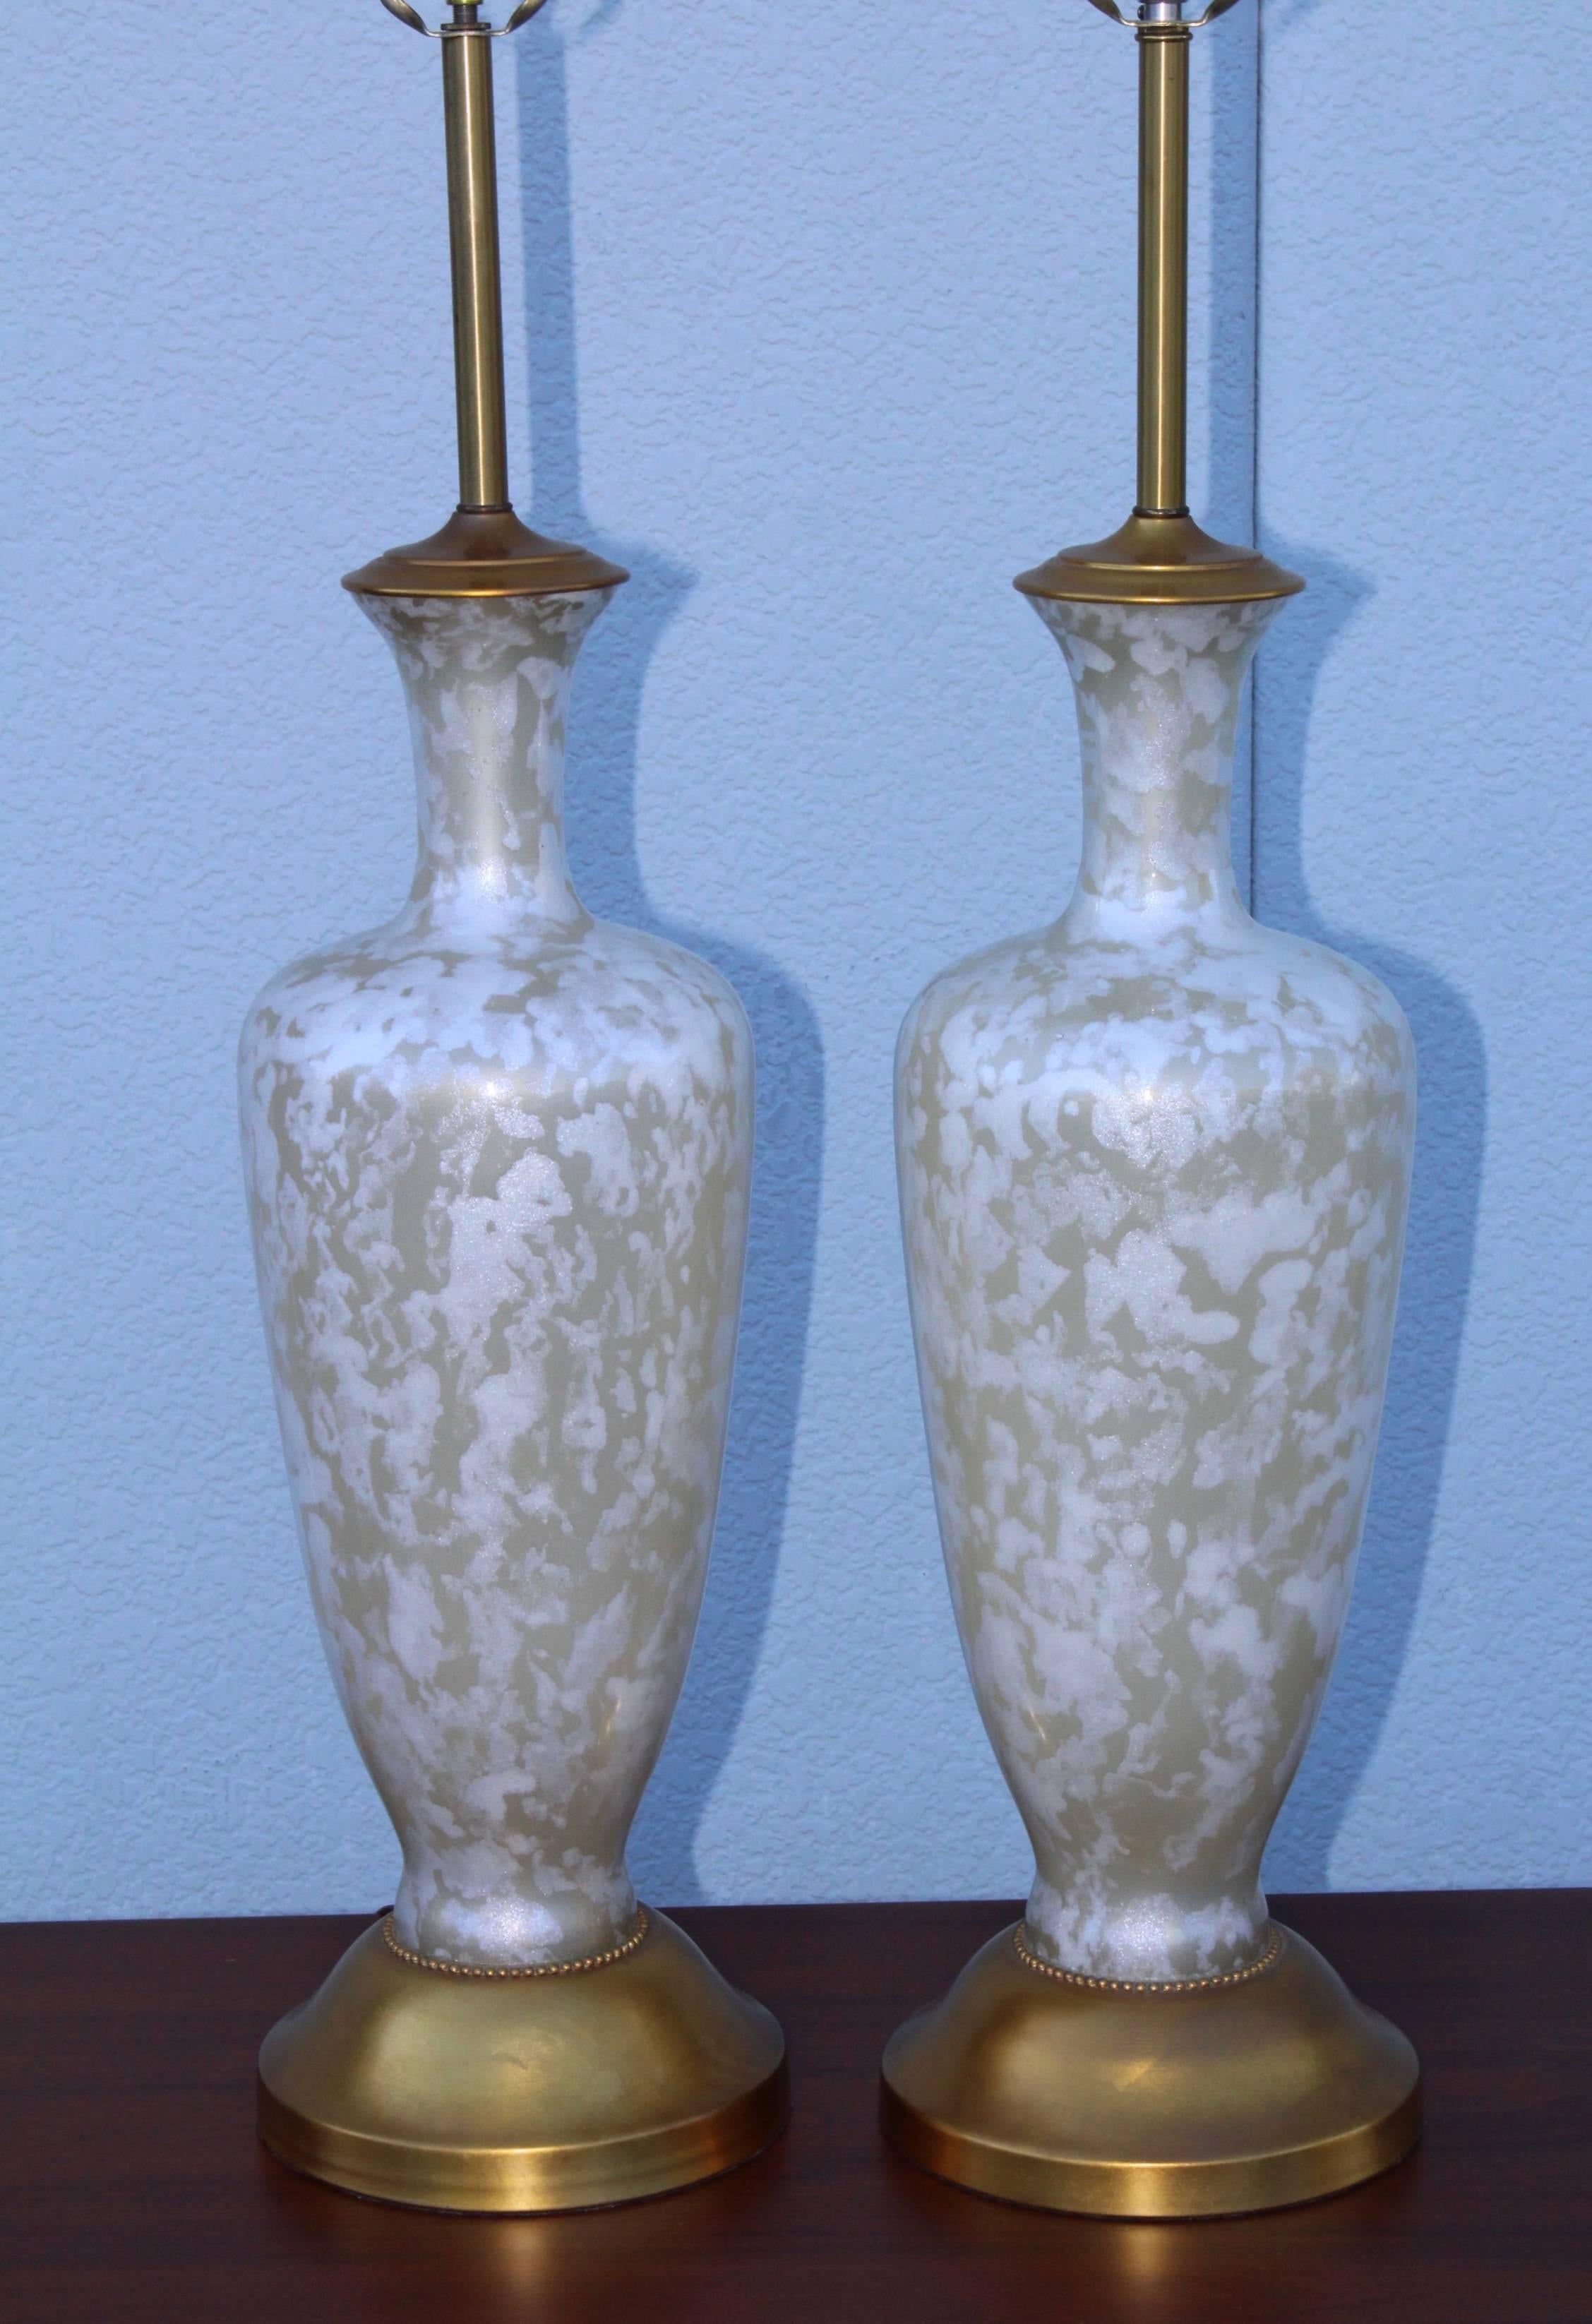 Atemberaubendes Paar großer Tischlampen aus Glas und Blattgold aus den 1950er Jahren, die The Mrbro Lamp Company zugeschrieben werden.

Höhe bis zur Lampenfassung 36